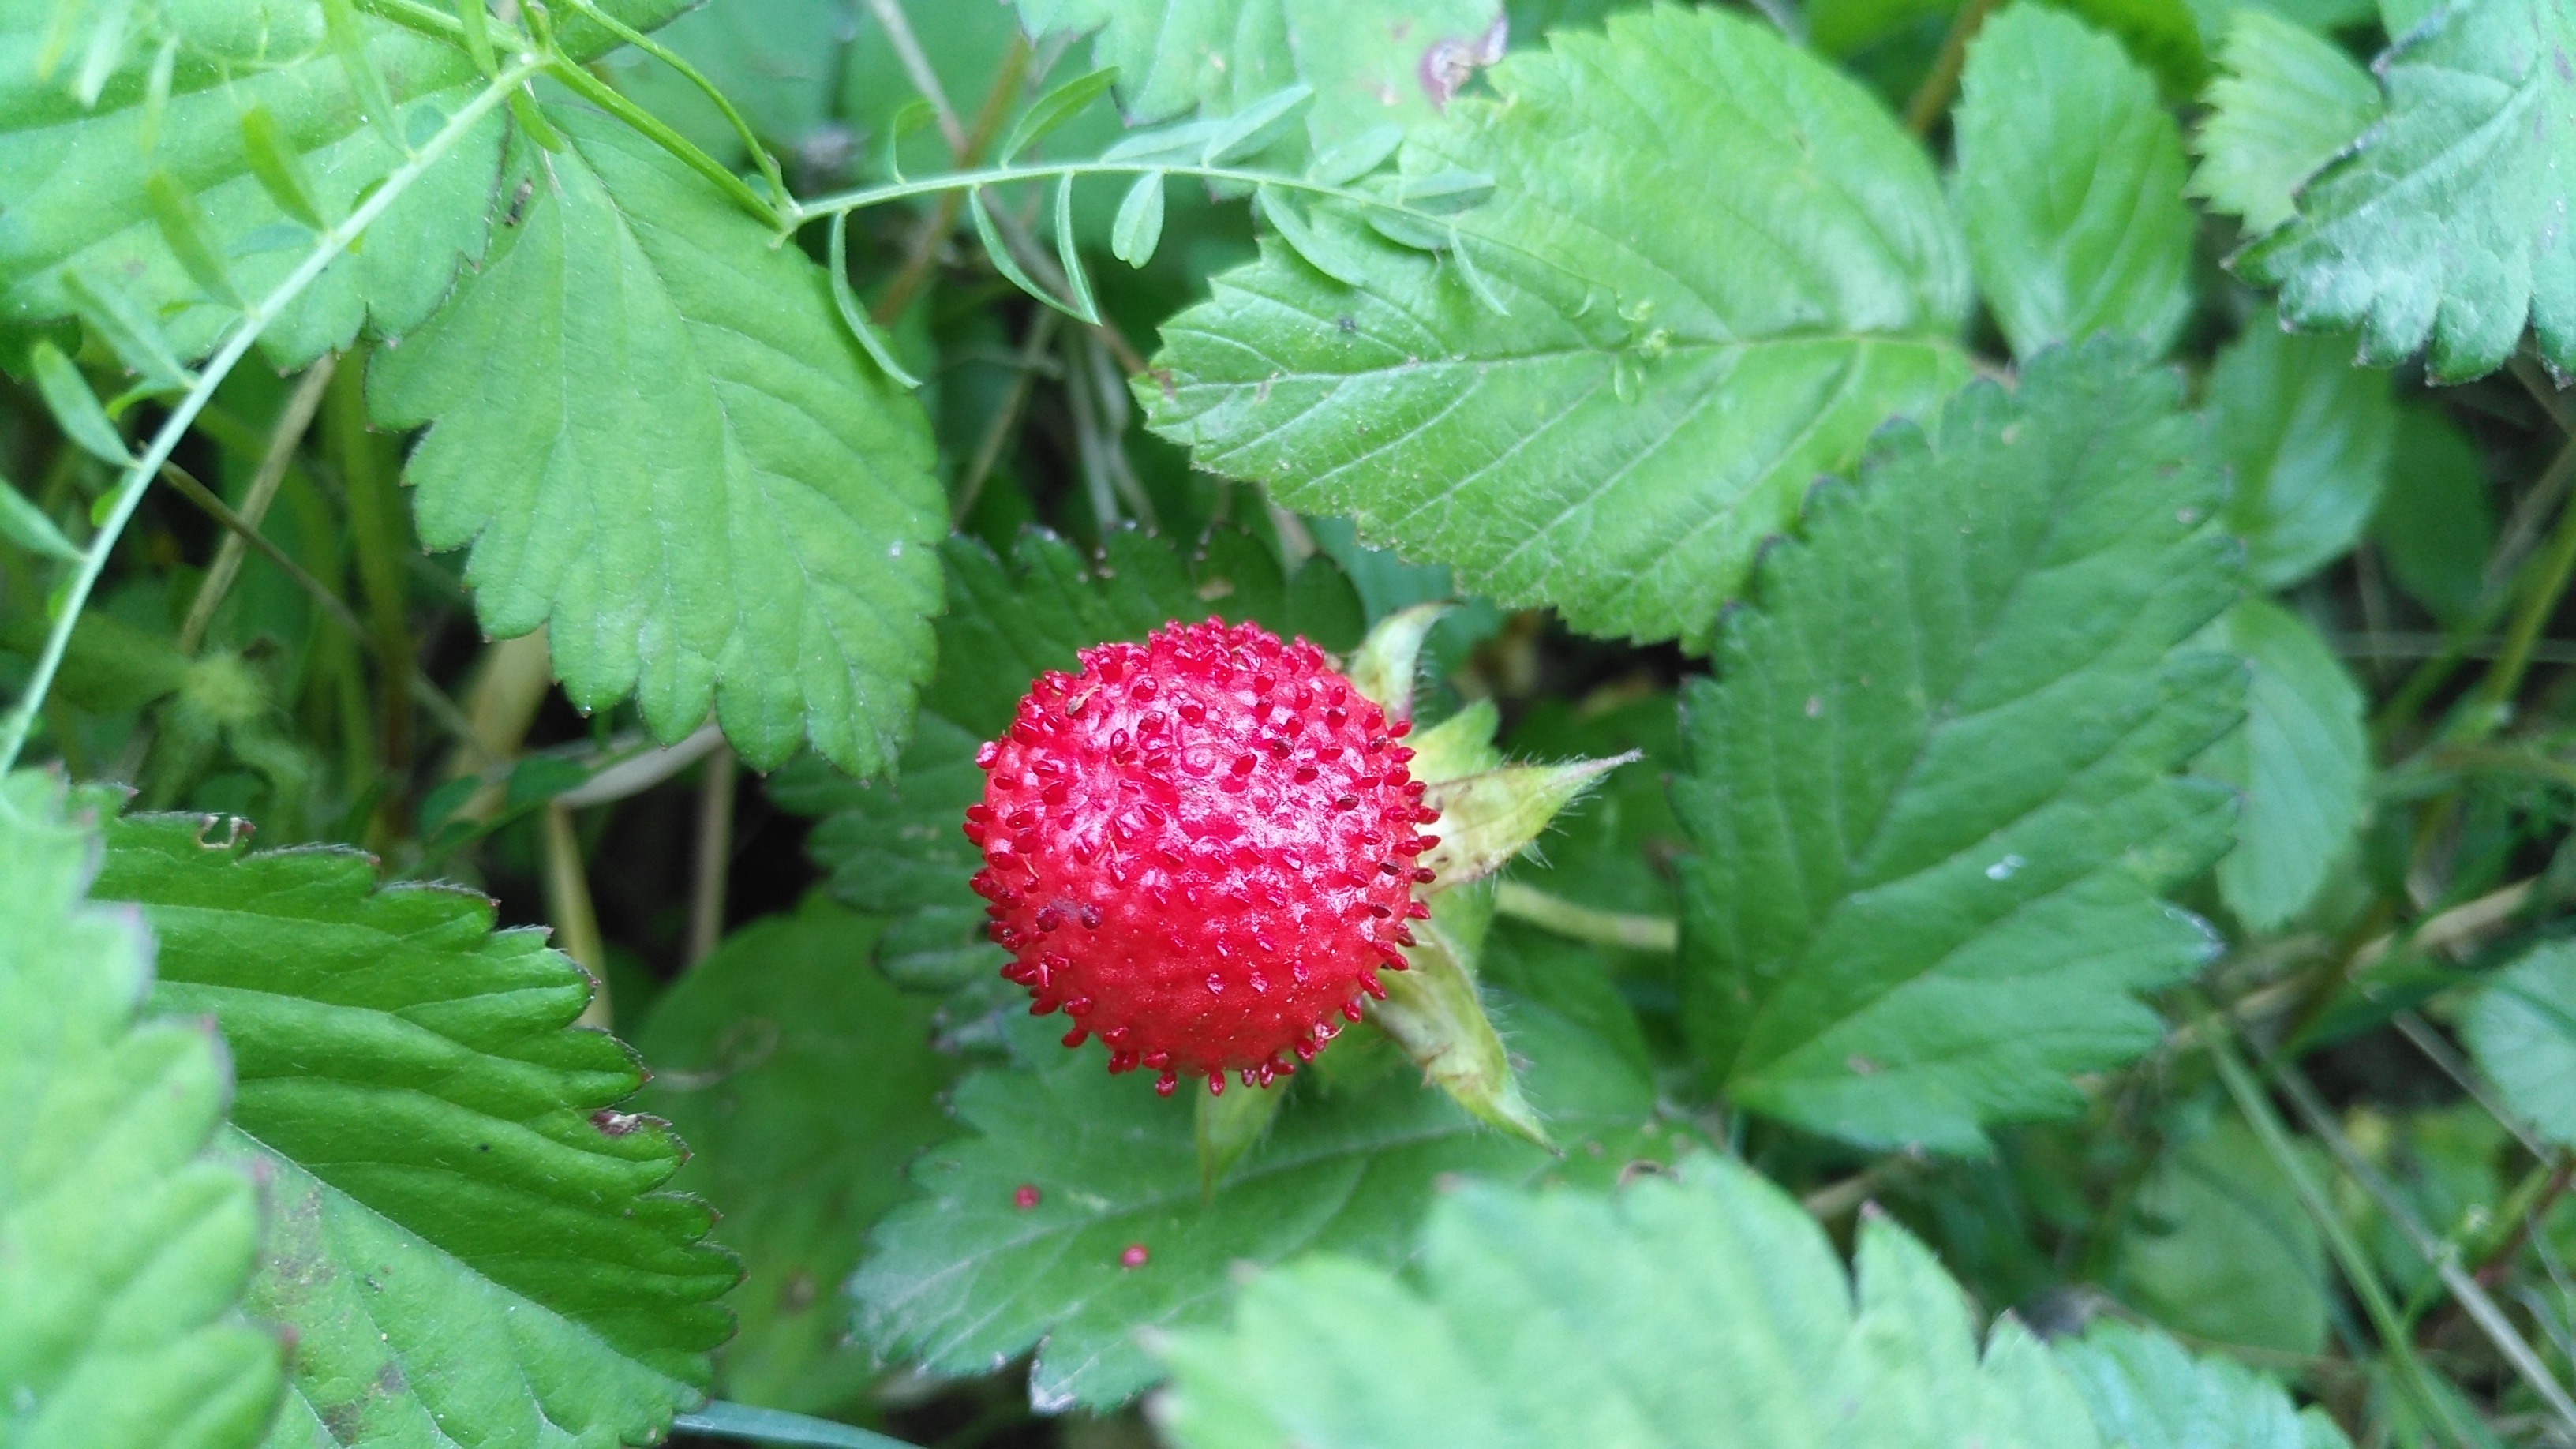 原创农村常见的"野草莓",蛇给它吐口水,果子不好吃却很好看